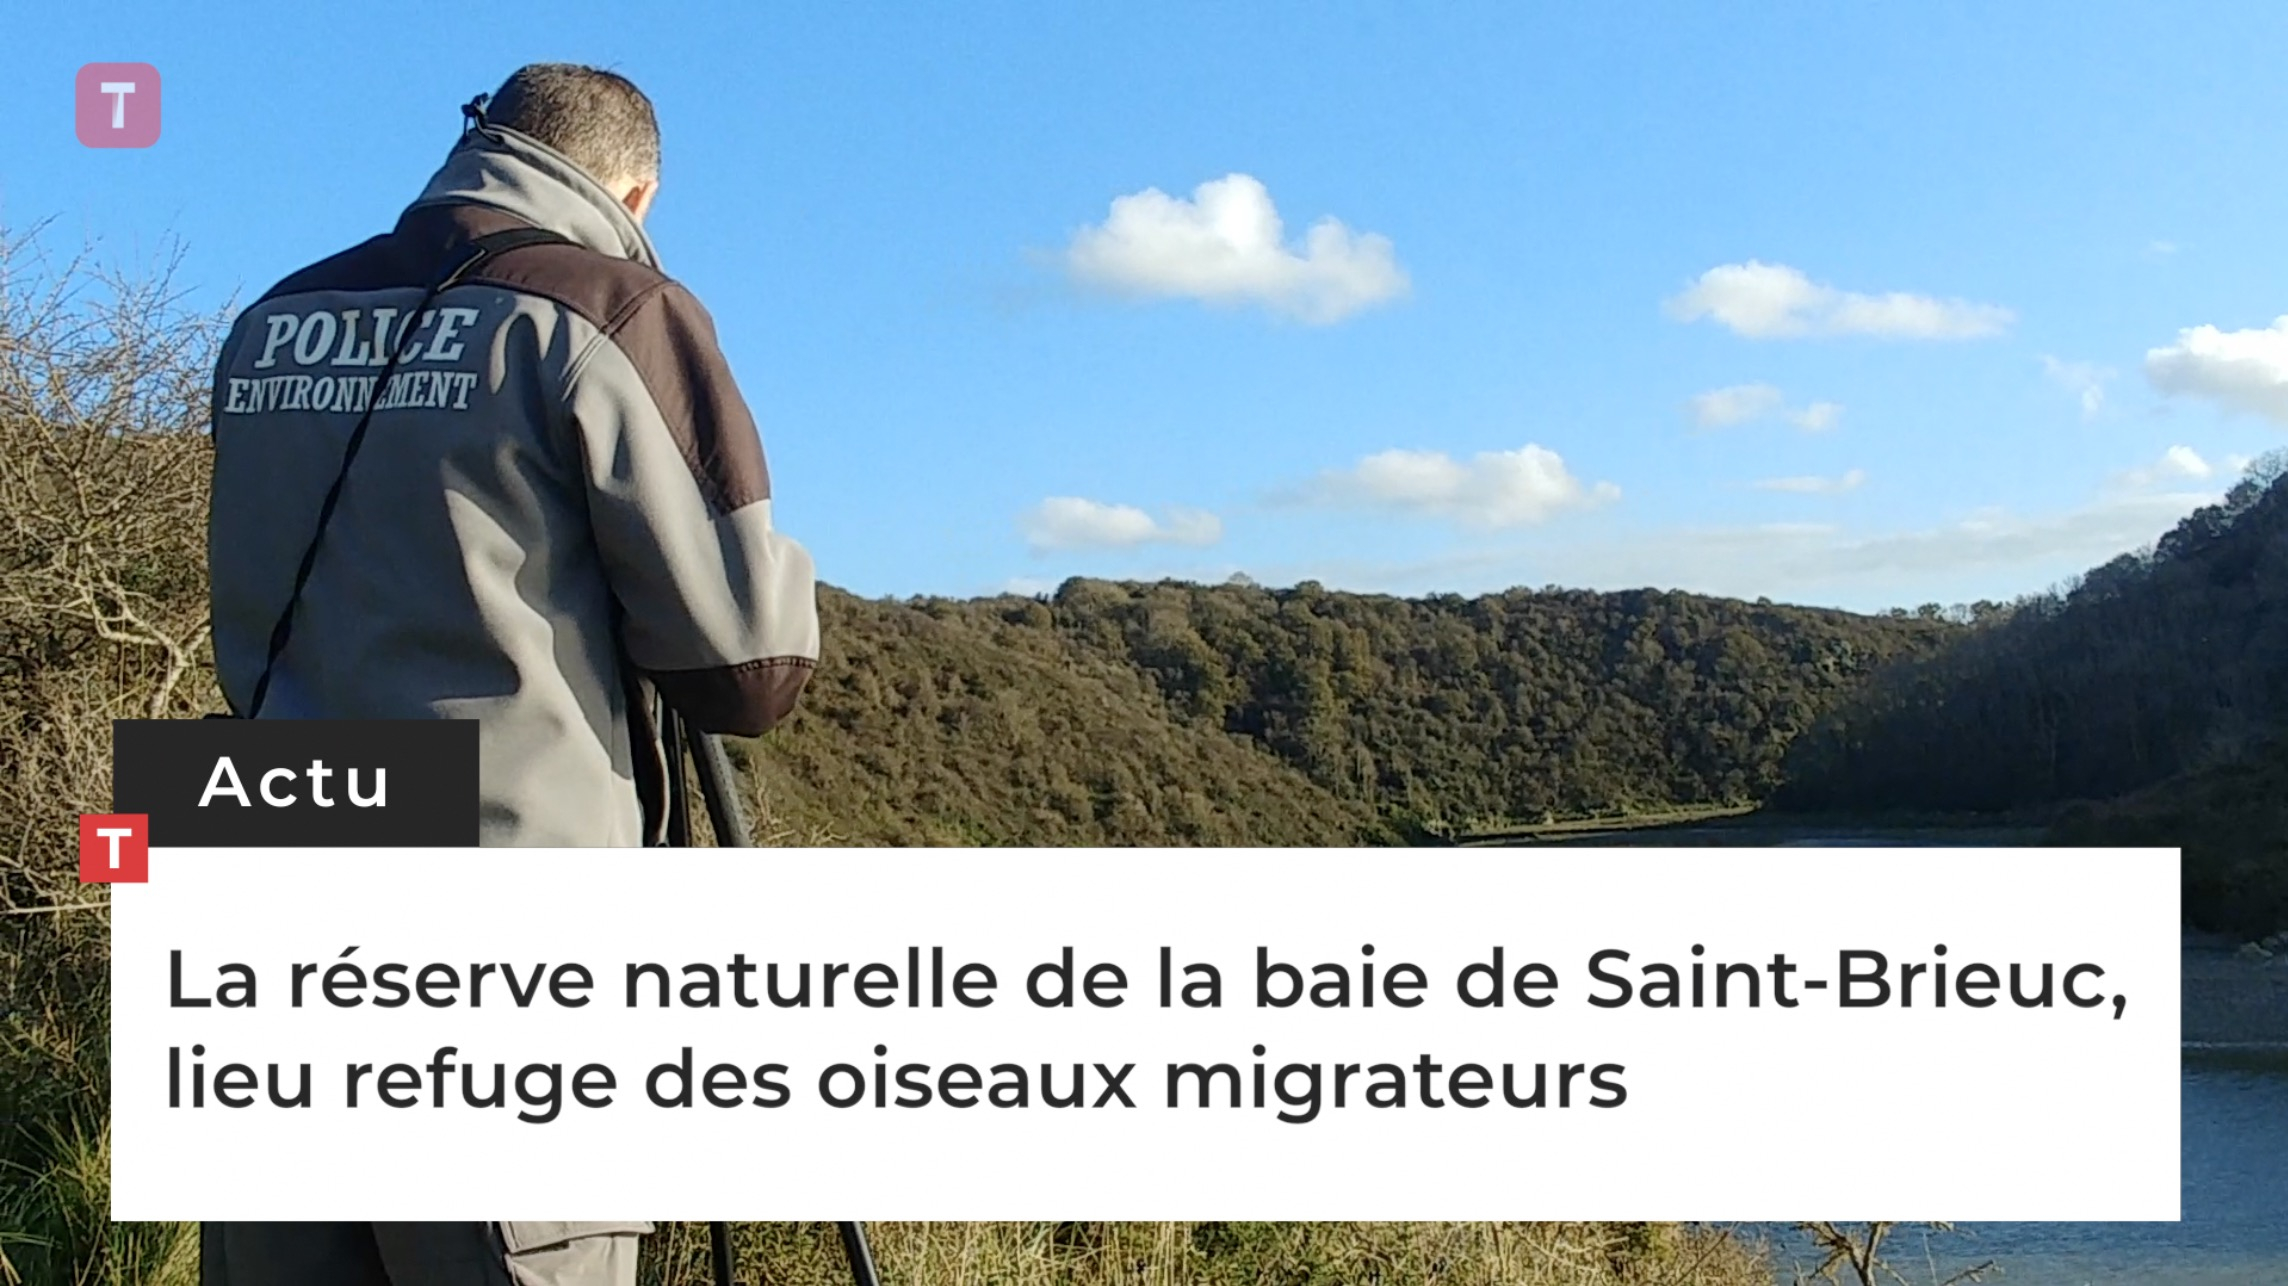 La réserve naturelle de la baie de Saint-Brieuc, lieu refuge des oiseaux migrateurs (Le Télégramme)